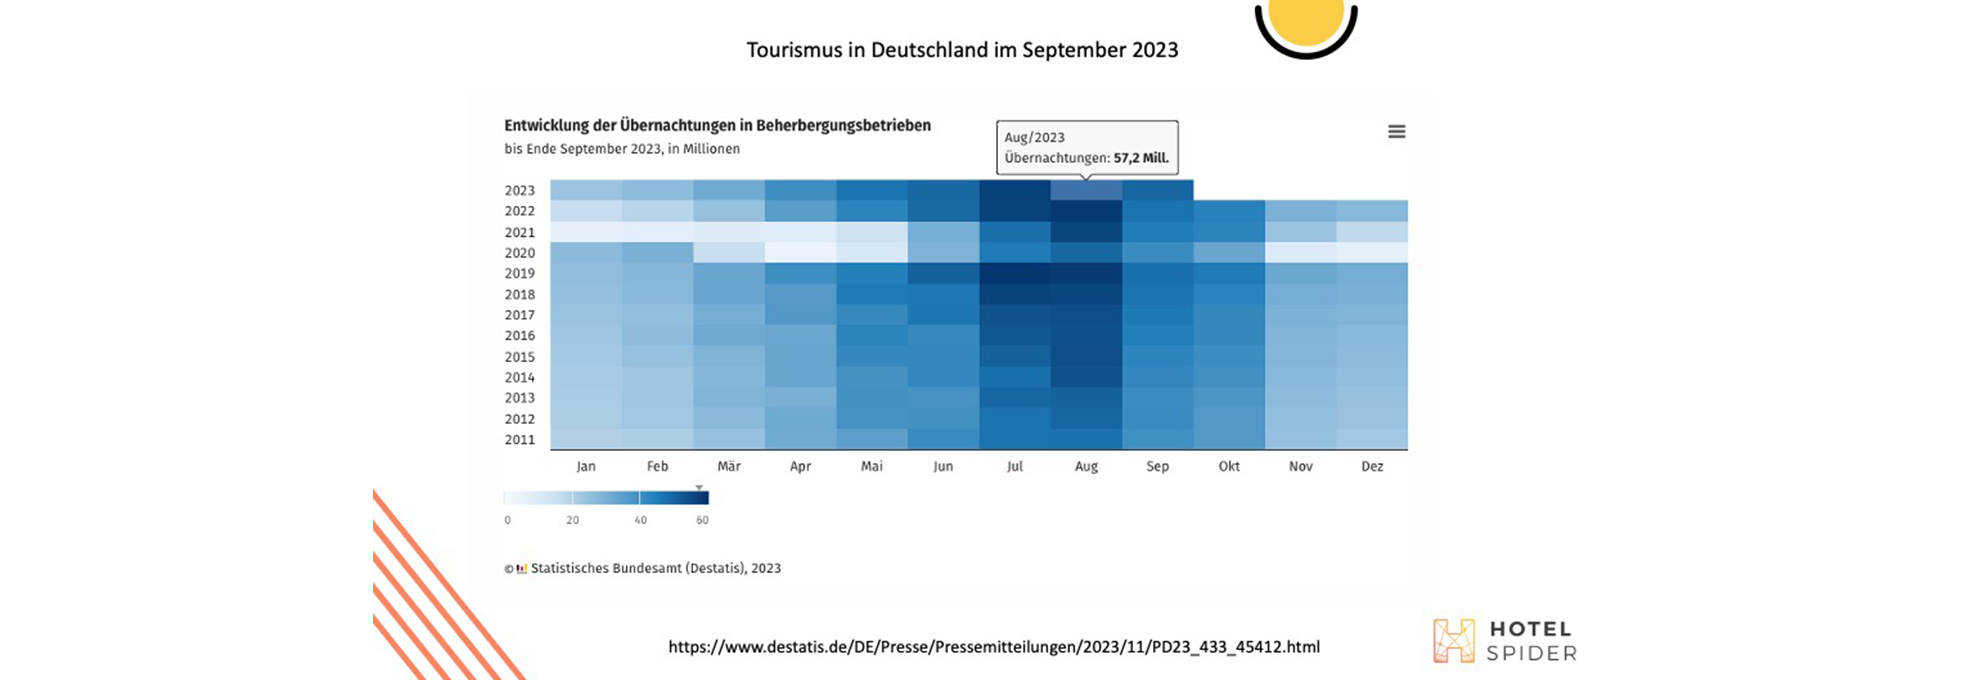 Évolution du nombre de nuitées en Allemagne de 2011 à 2023. 